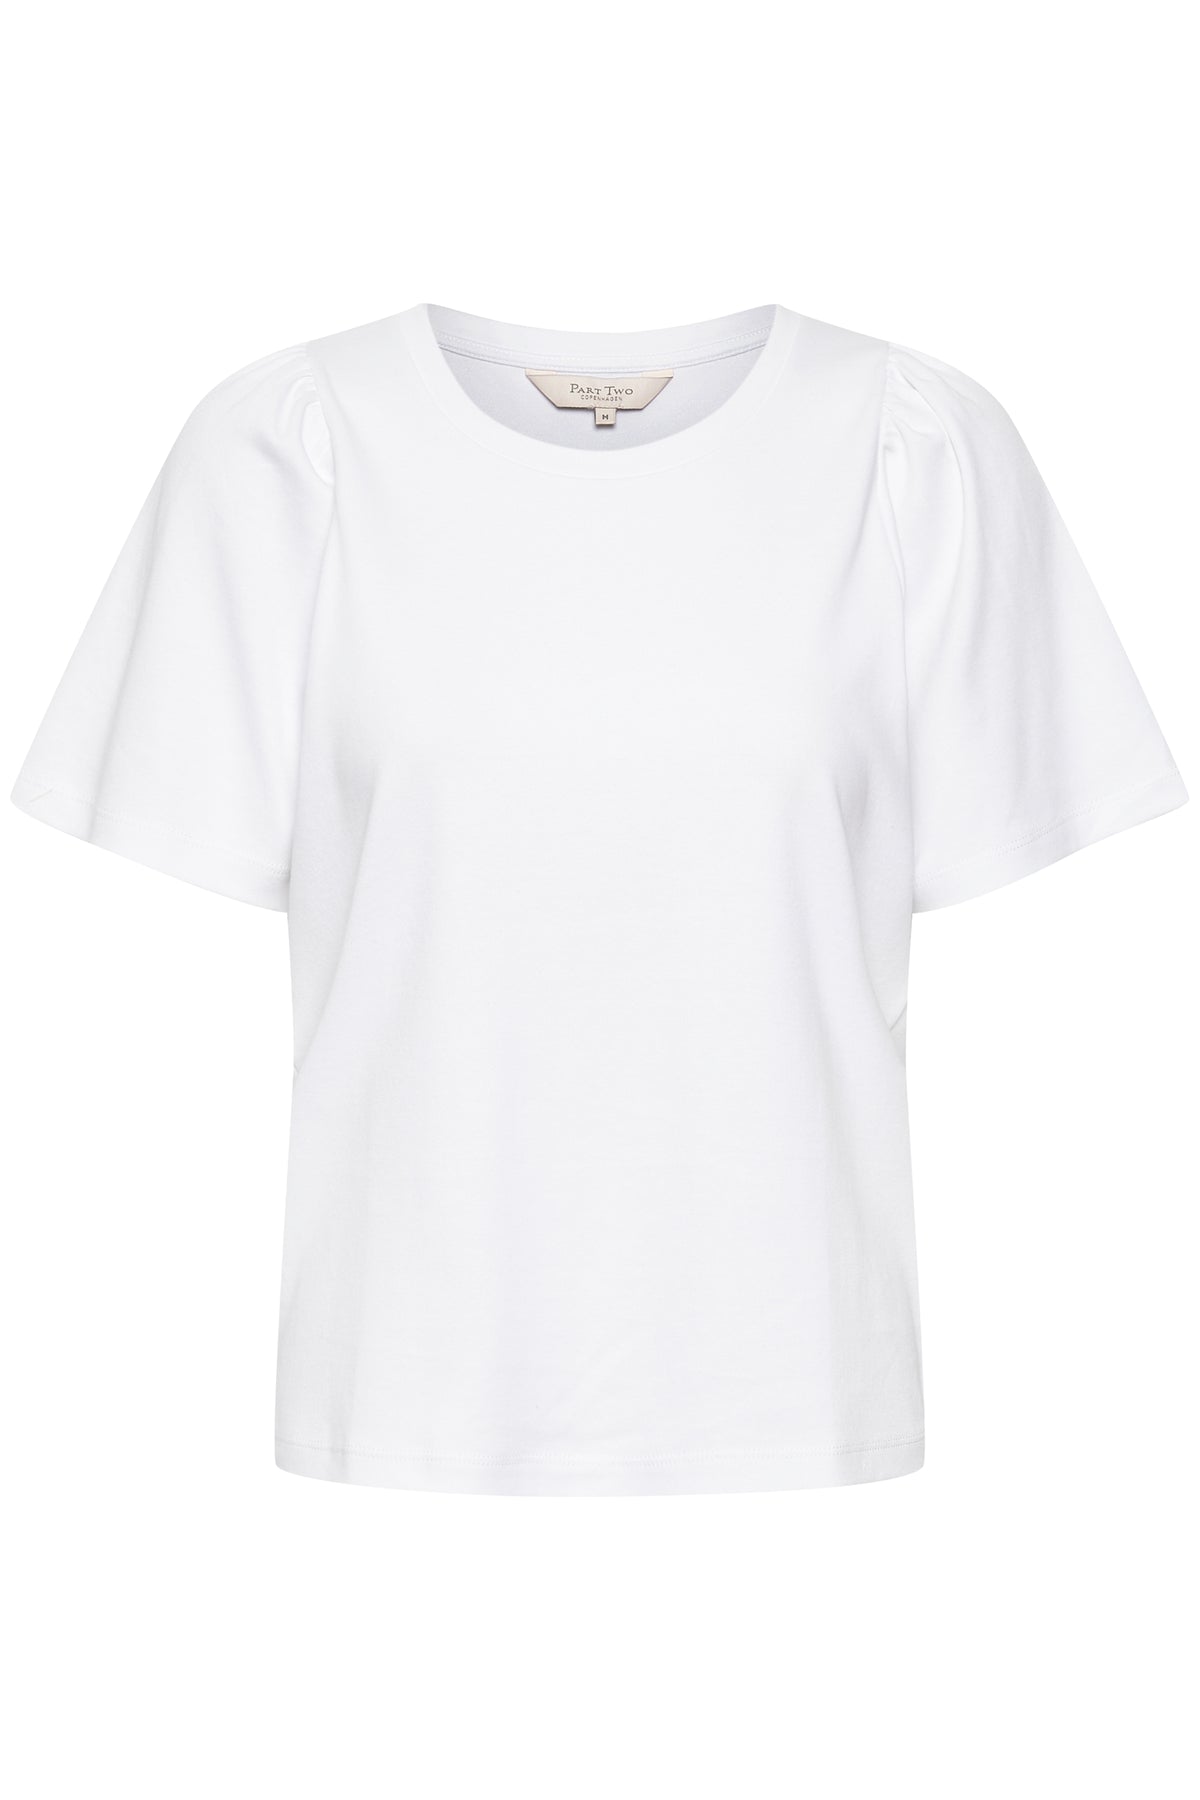 T-shirt Imalea blanc brillant, deuxième partie, 30307807-SS24